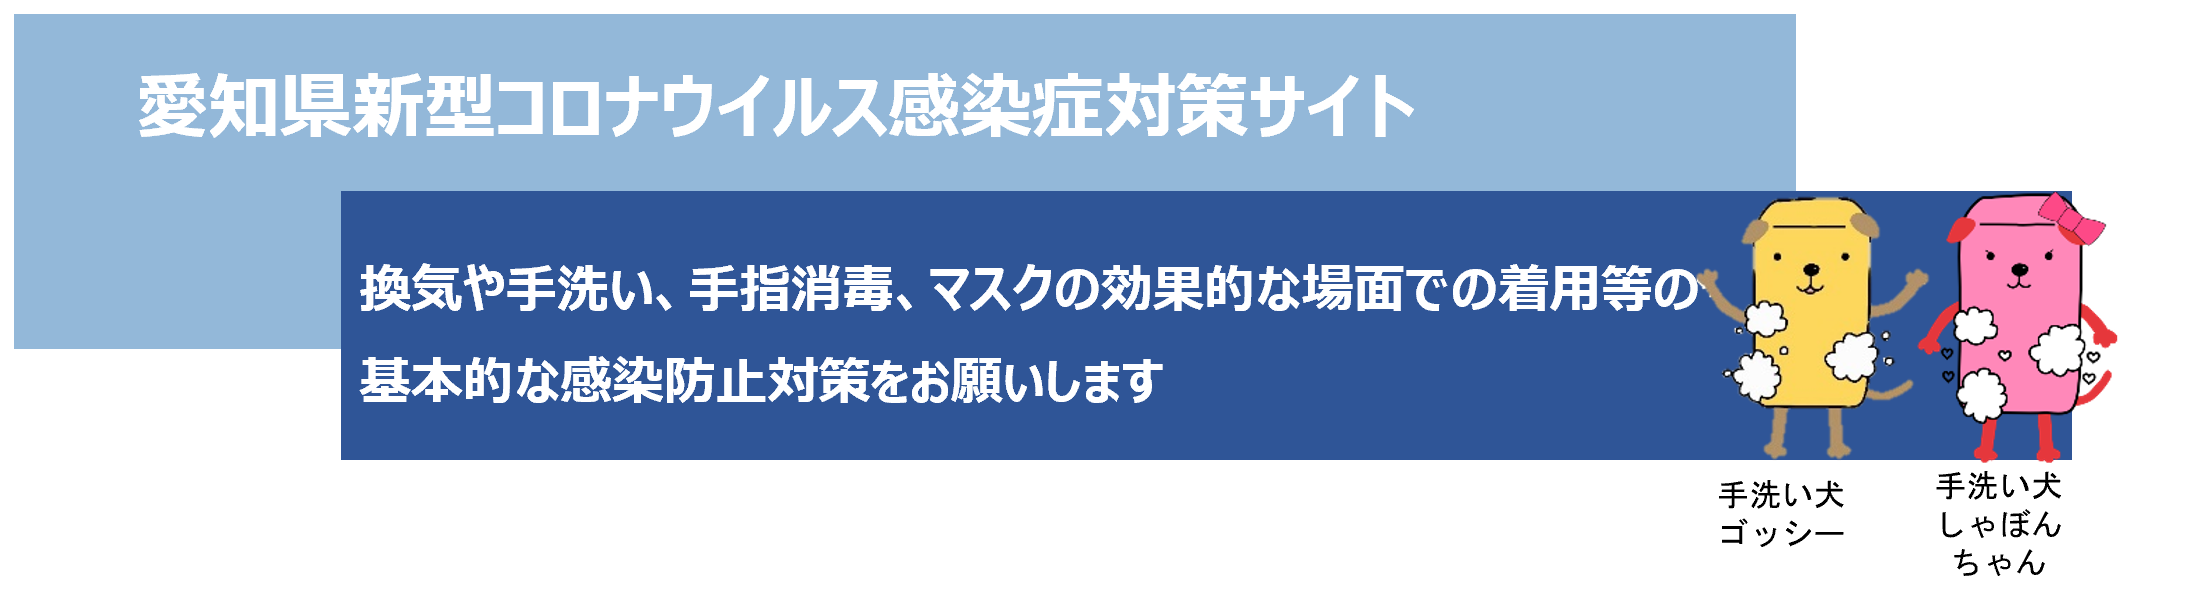 愛知県新型コロナウイルス感染症対策サイト